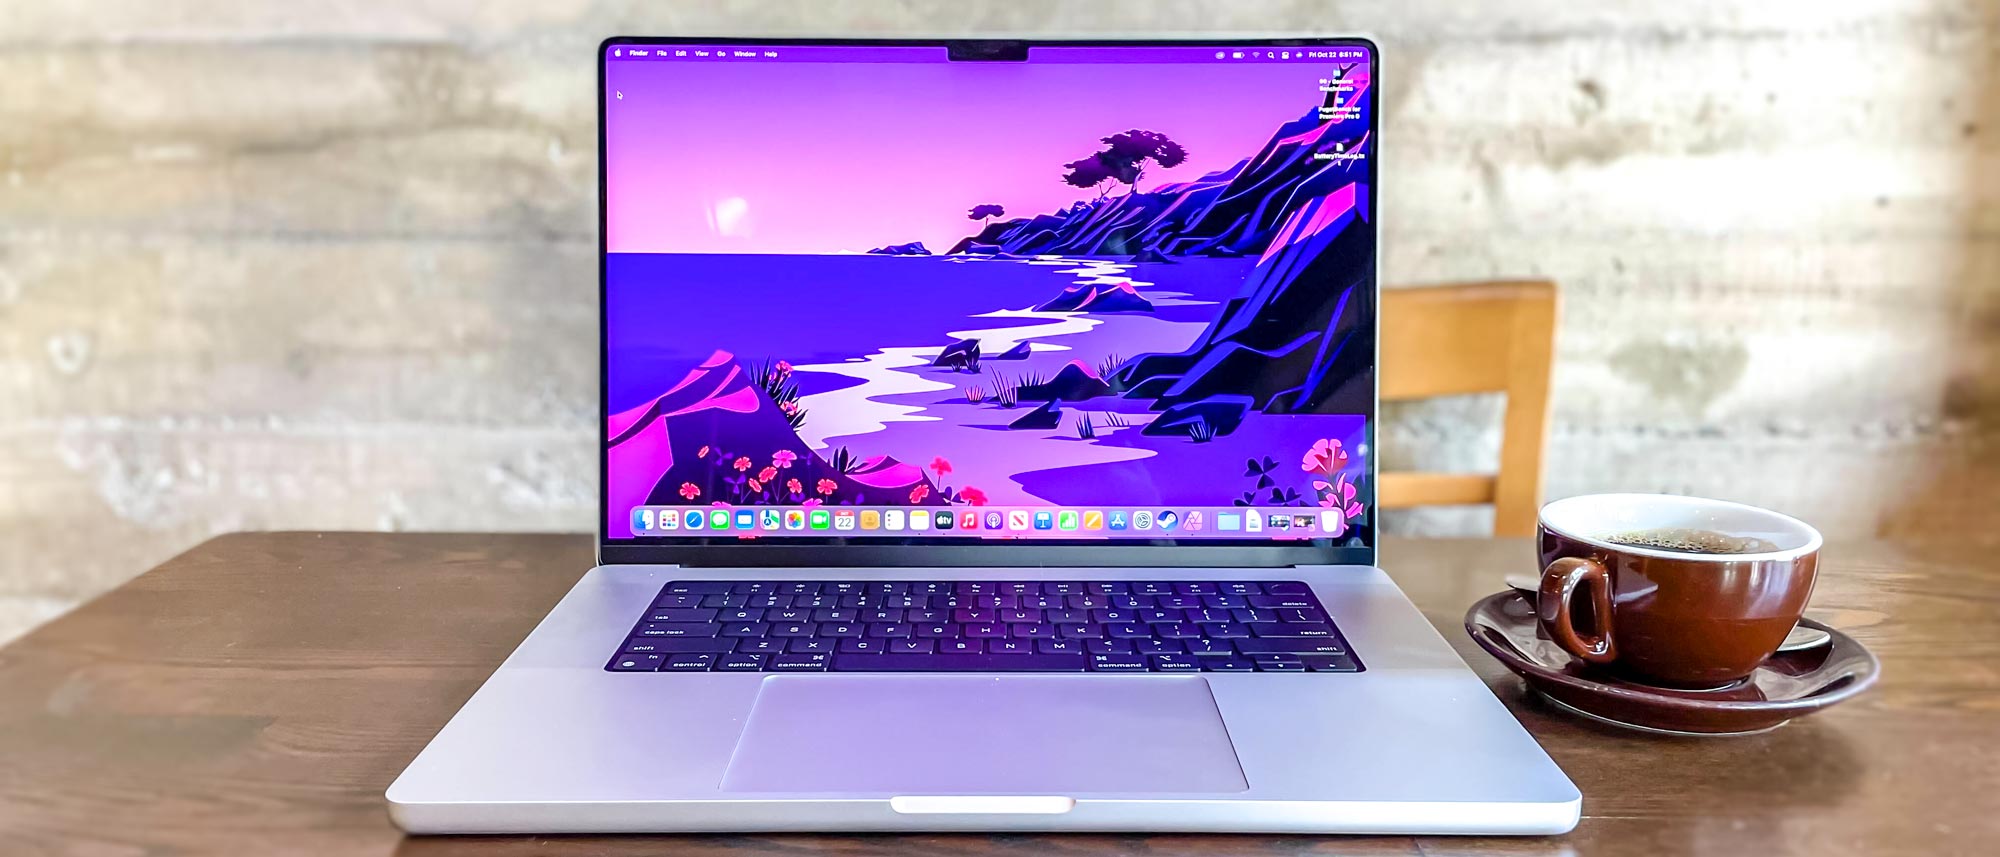 16 MacBook Pro (M1 Pro & M1 Max) Review 2021 